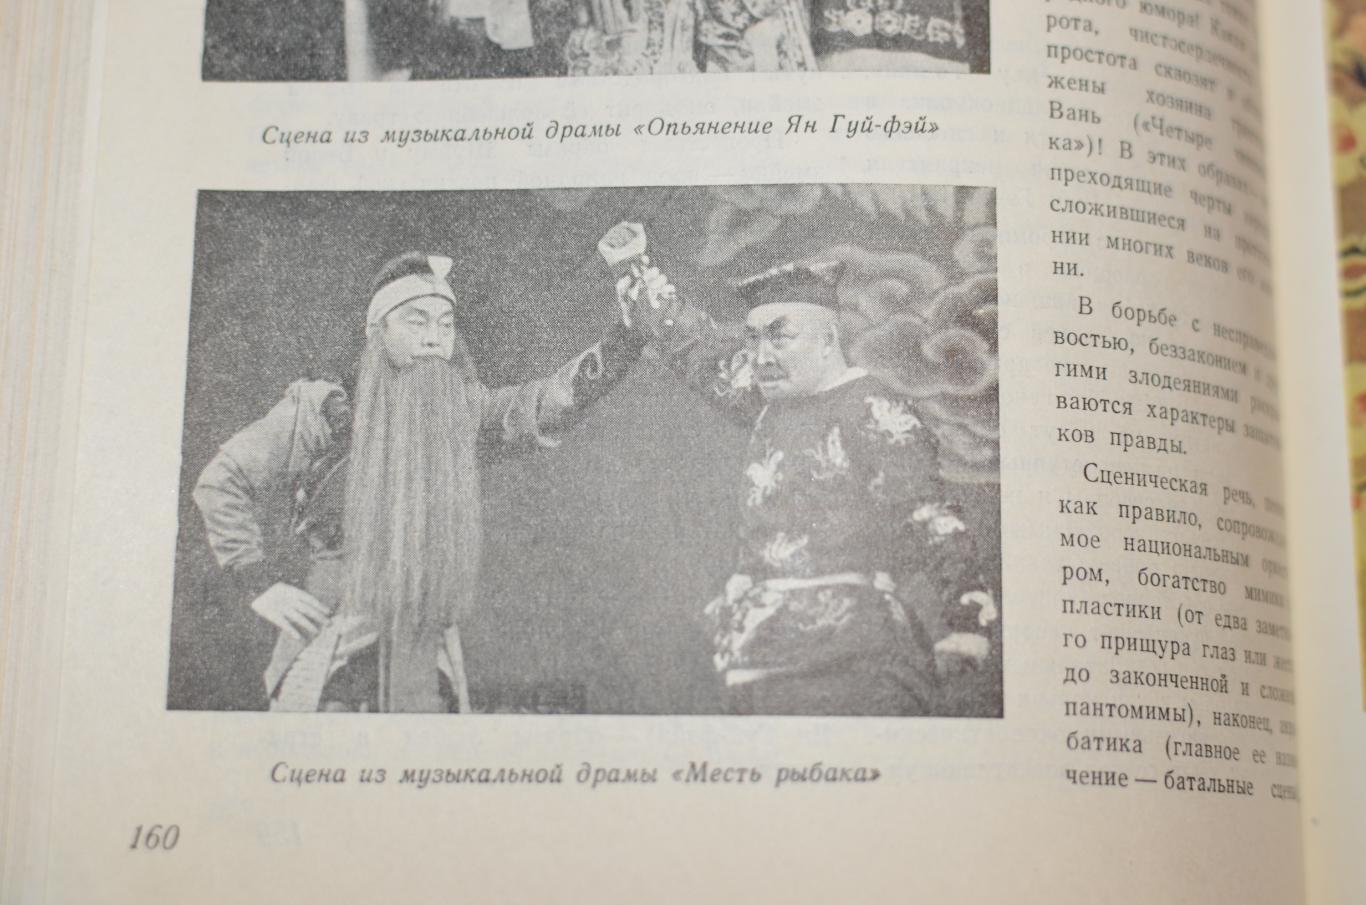 Журнал Советская Музыка № 2 1957 г Глинка Китай 5